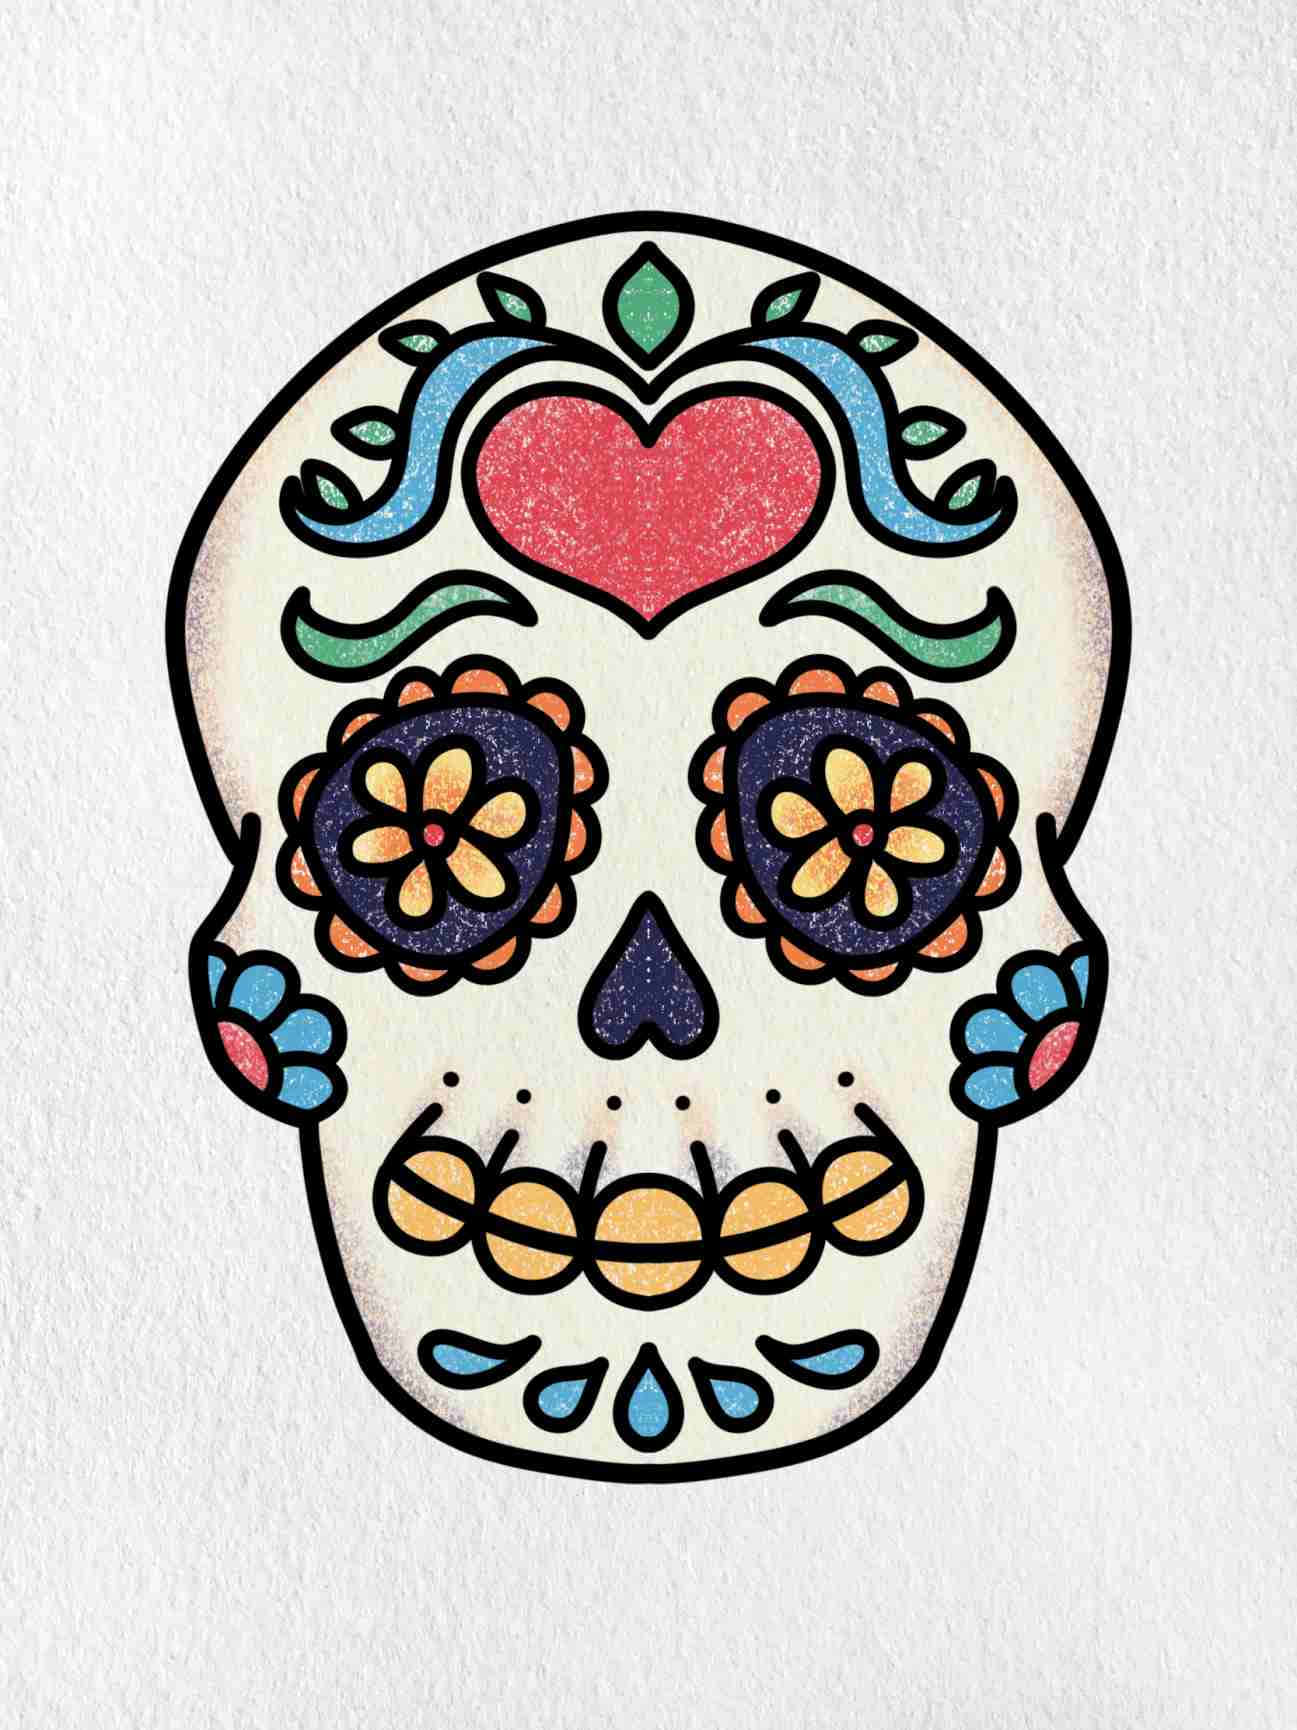 Festive Sugar Skull – Celebrate the dead with a colourful sugar skull.